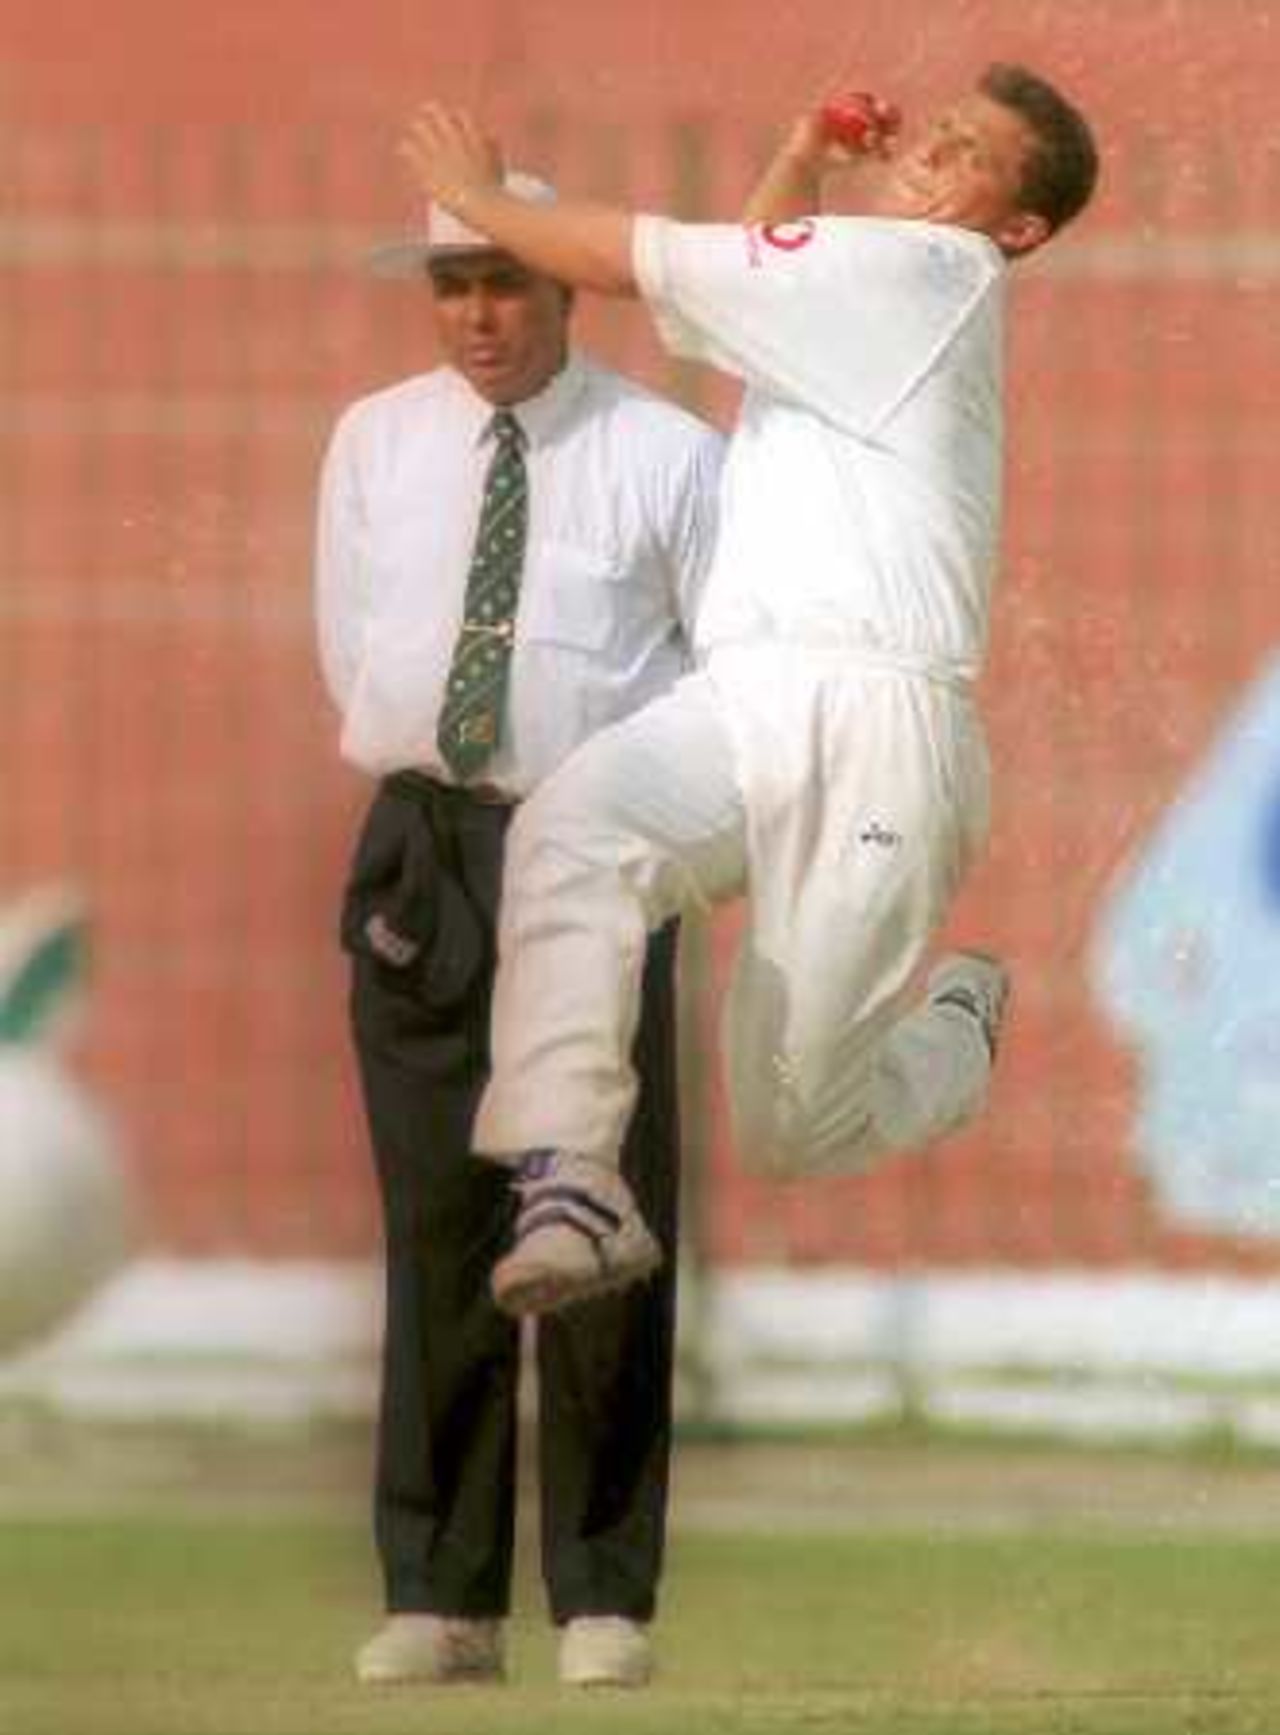 Full steam ahead for Gough, Governor's XI v England XI at Peshawar, 8-11 Nov 2000